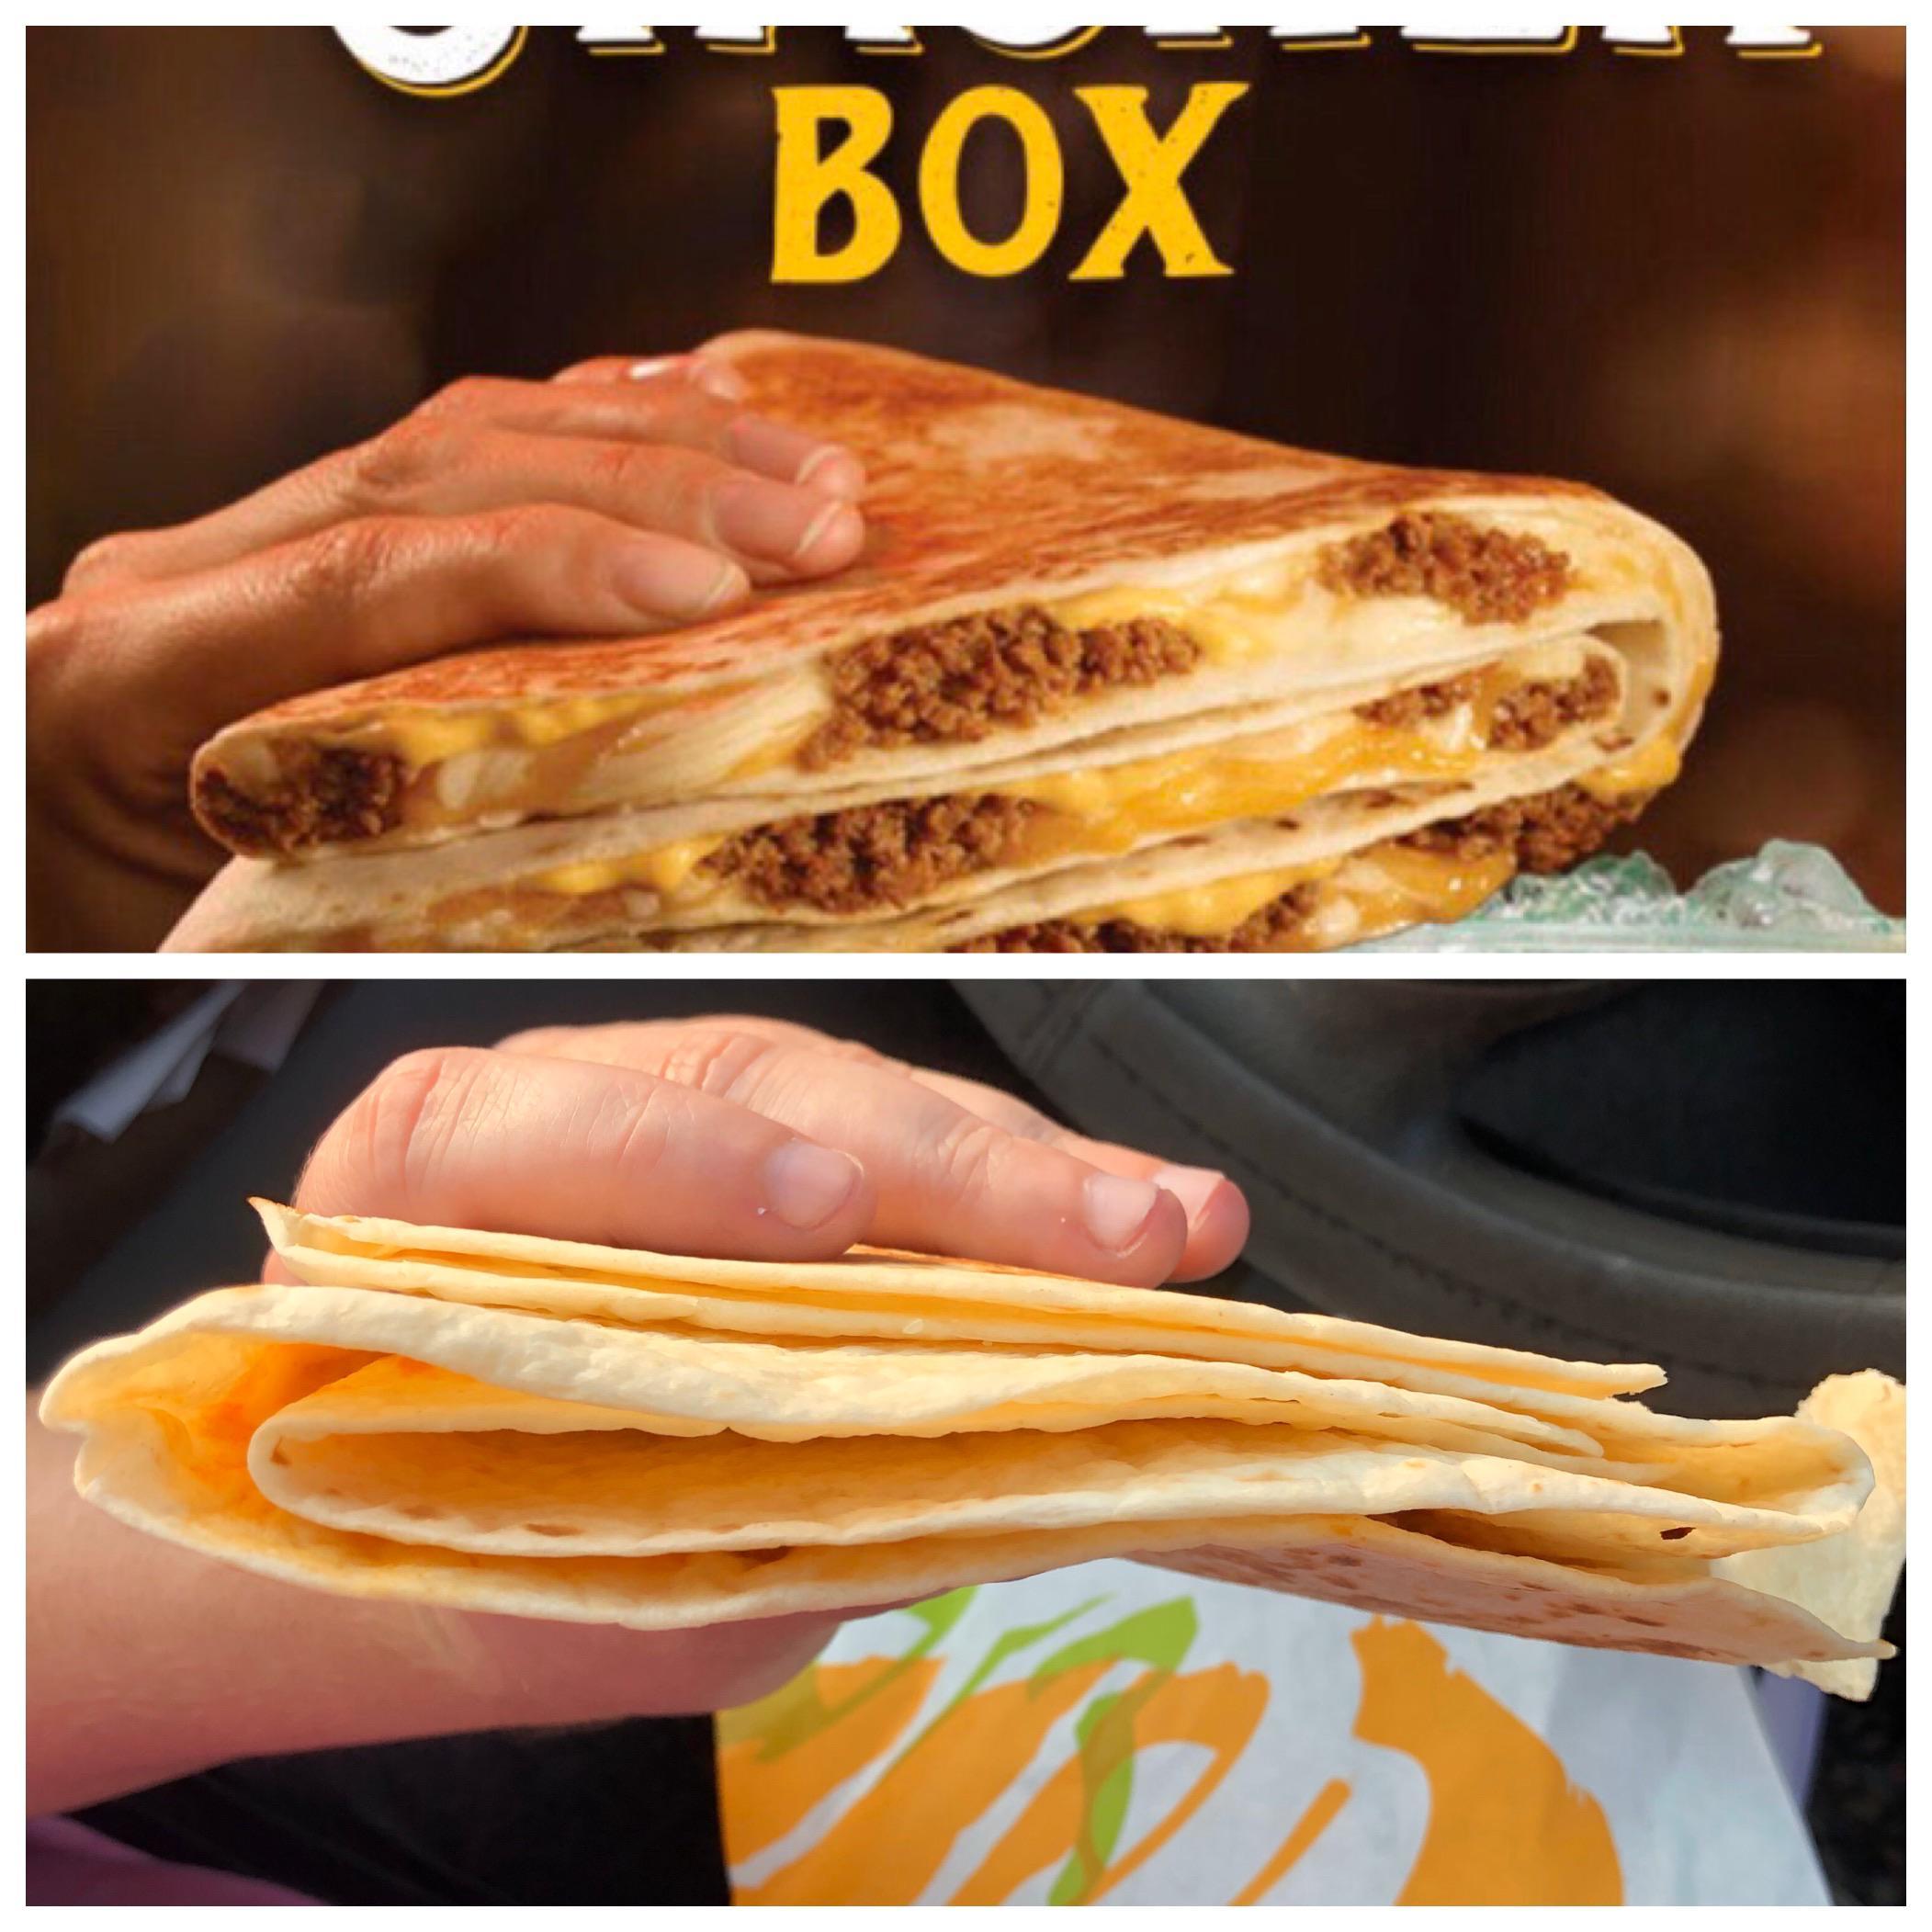 honest slogans  - taco bell expectation vs reality - Box